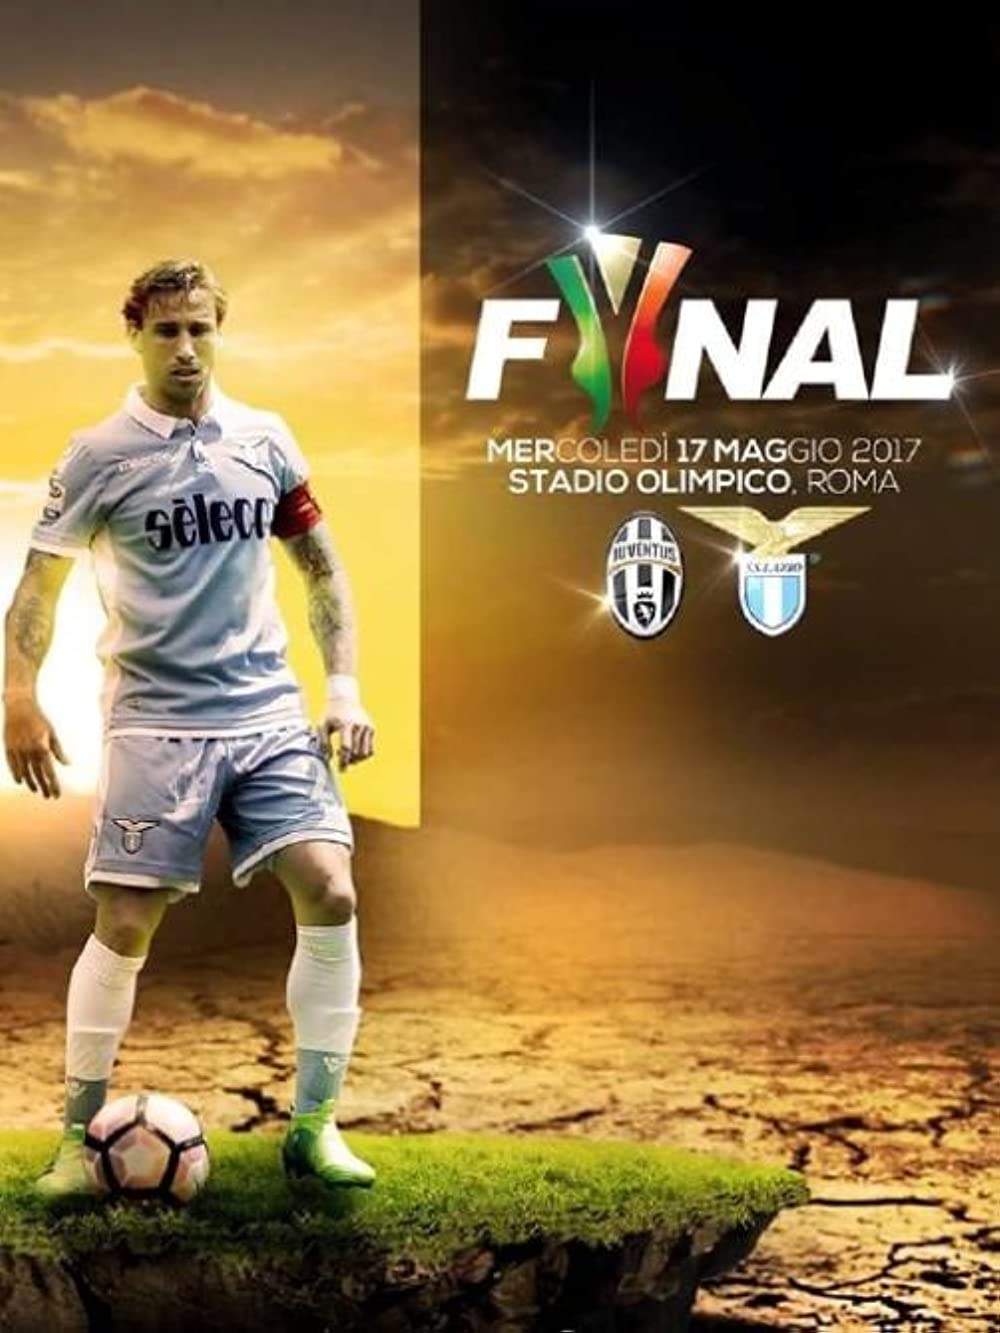 Coppa Italia Final 2017